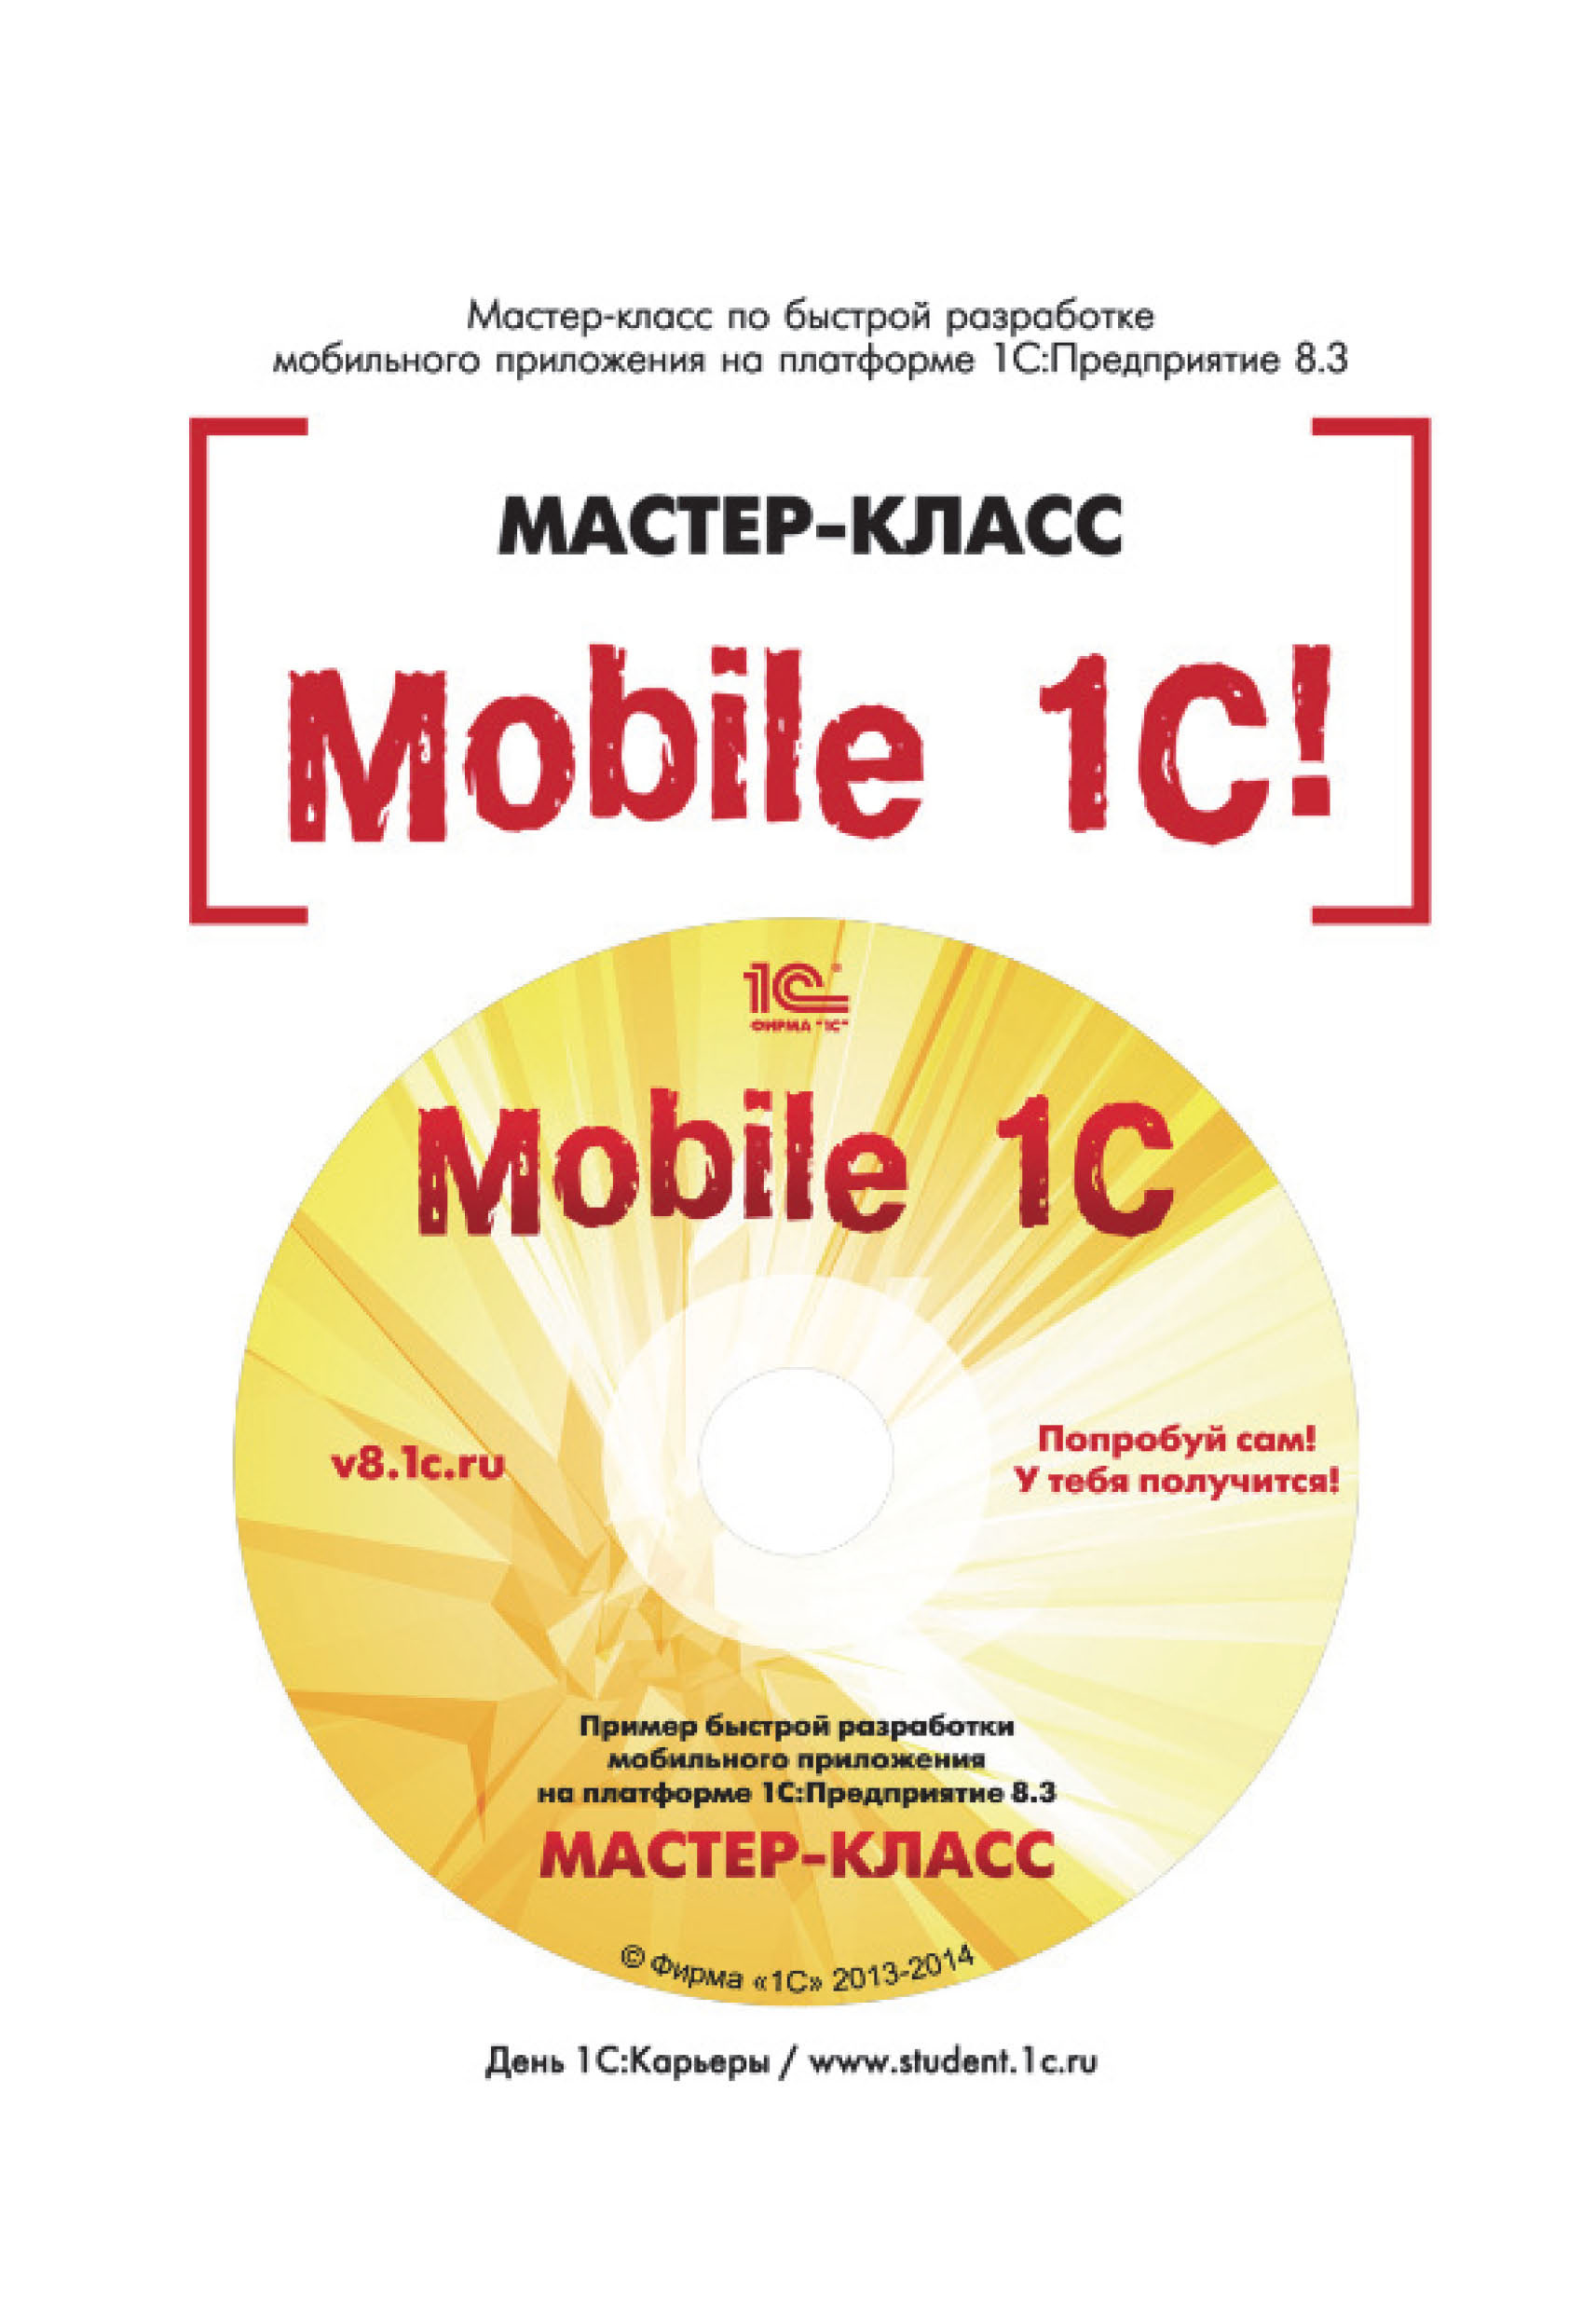 Mobile 1С. Пример быстрой разработки мобильного приложения на платформе 1С:Предприятие 8.3. Мастер-класс (+epub)